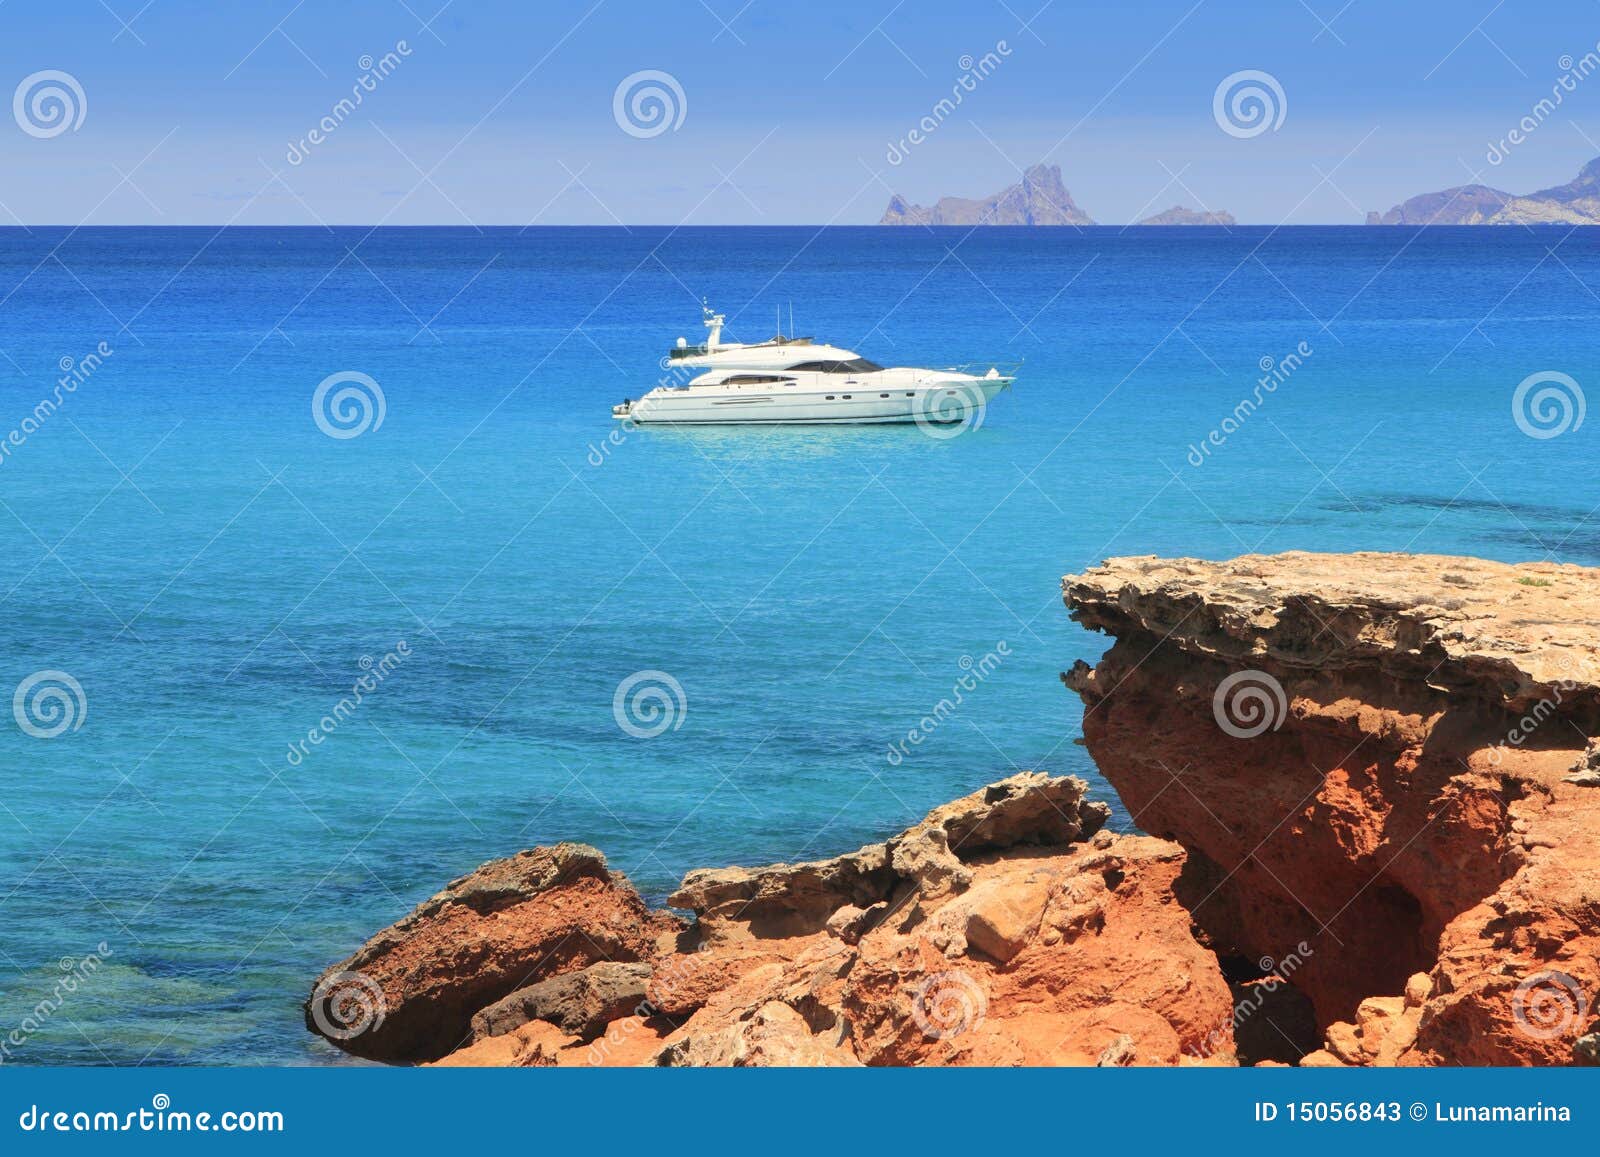 formentera cala saona mediterranean best beaches